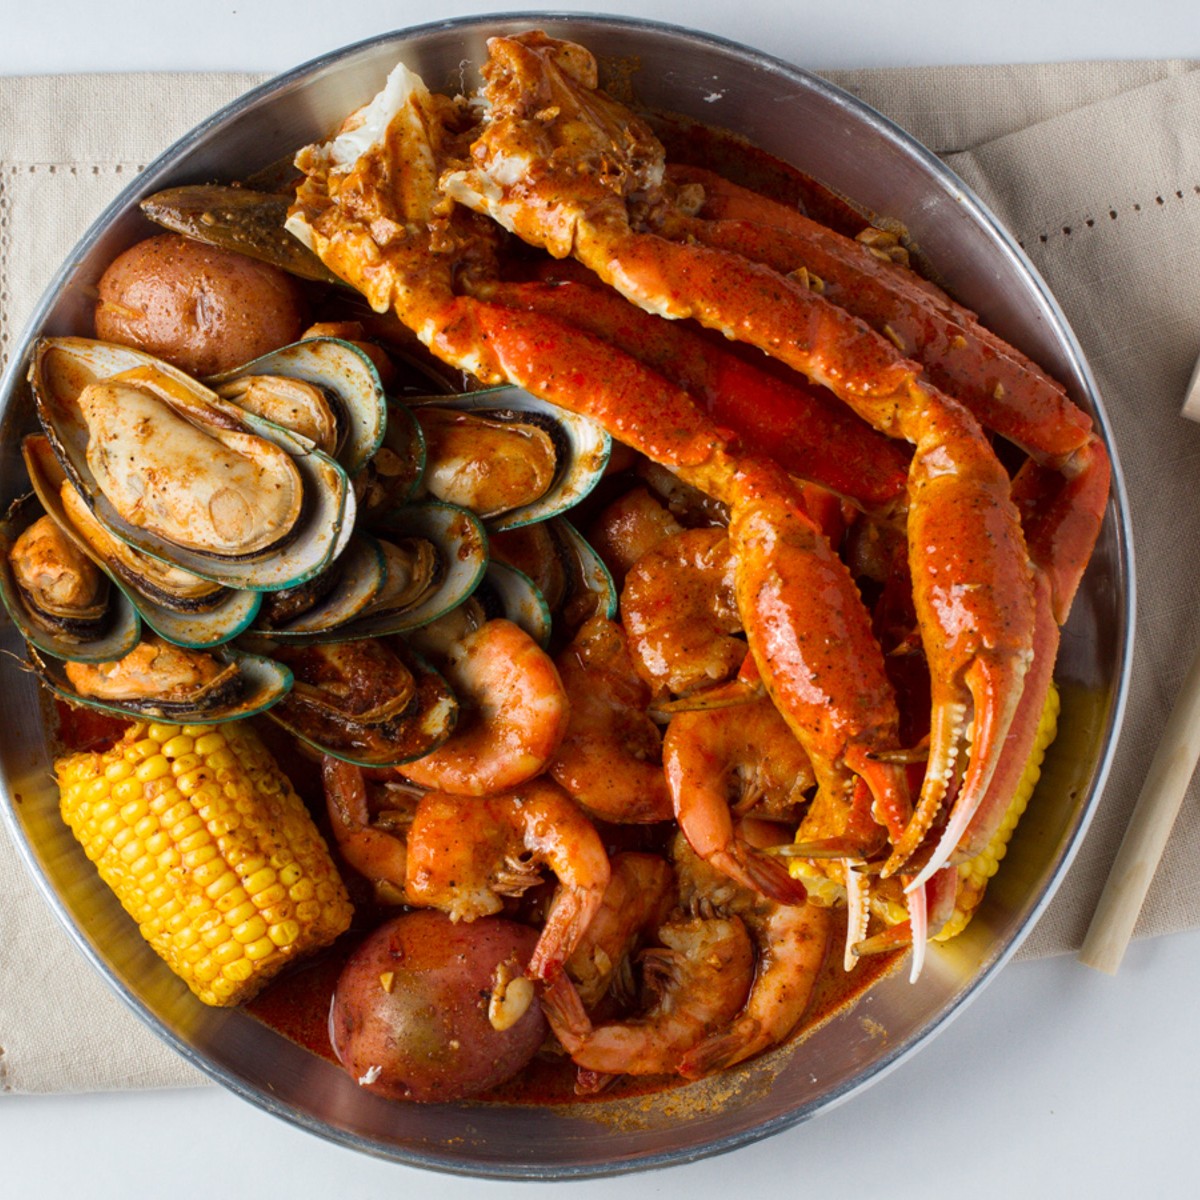 Hook & Reel Cajun Seafood & Bar USA - Choosing between Lobster